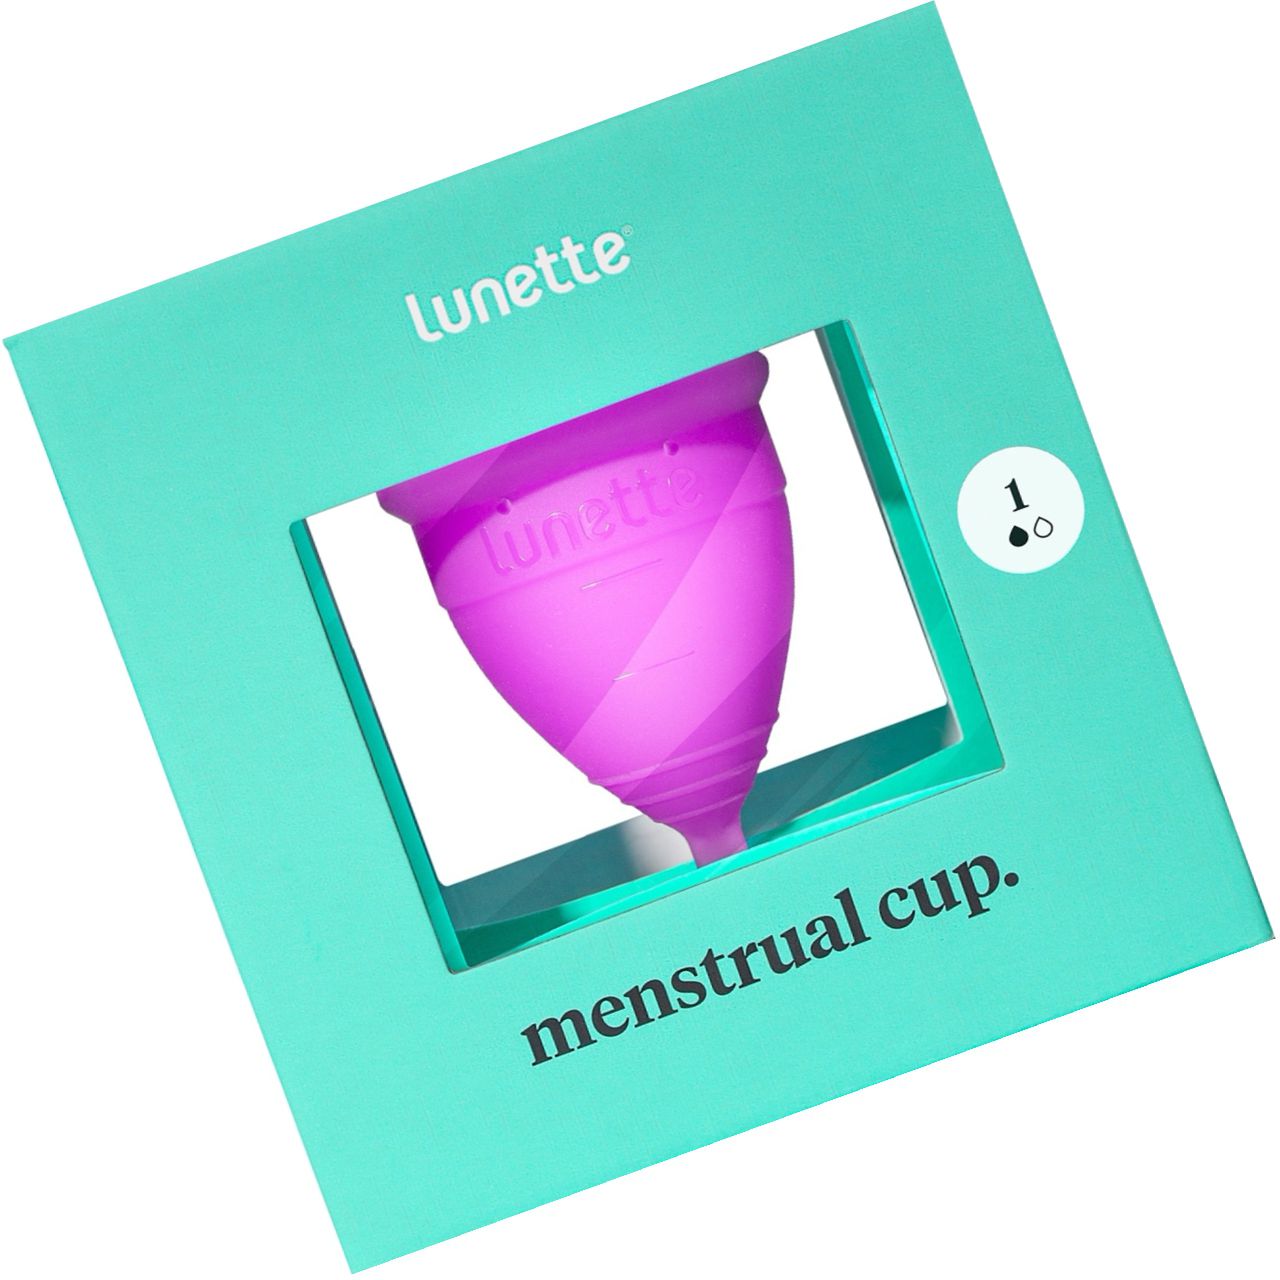 Cupa Menstruala Lunette Marimea 1